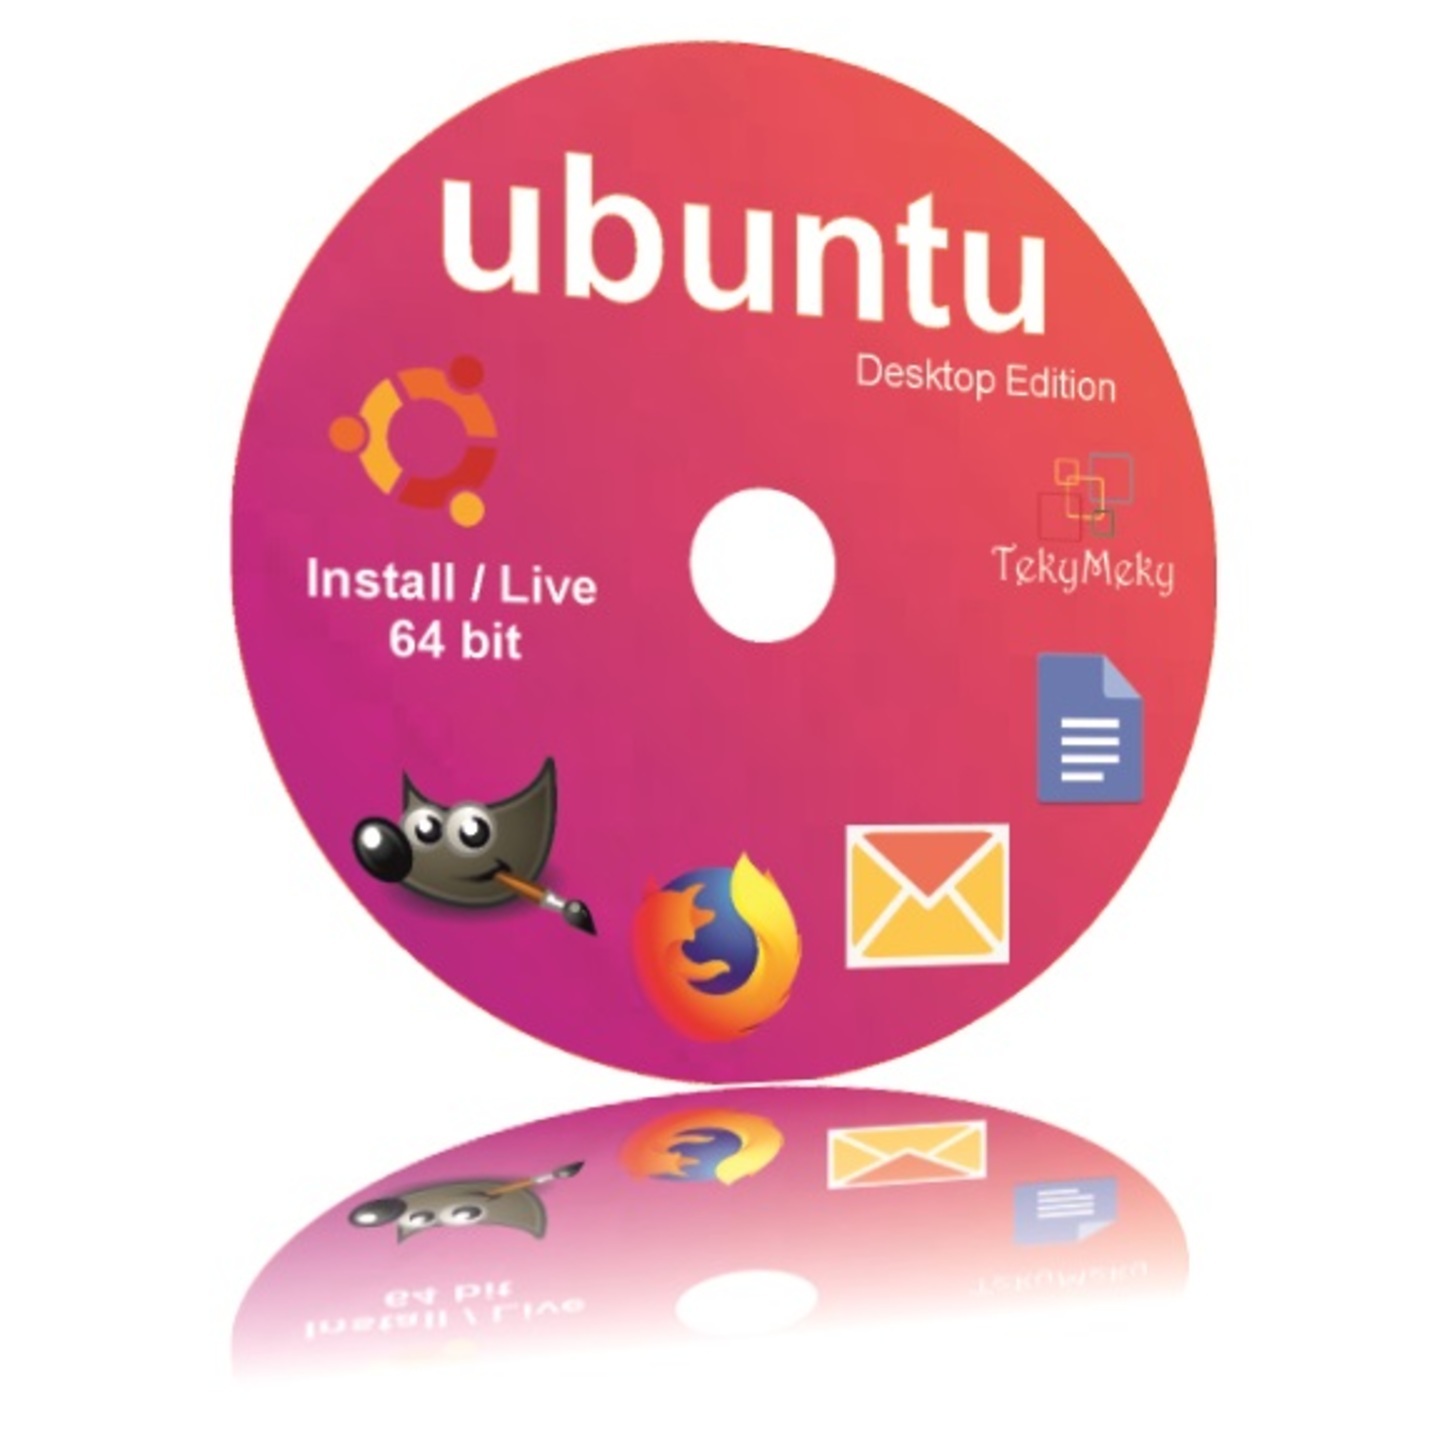 Ubuntu Linux Ver 20.04.3 LTS Live + Installer 64 Bit Desktop Operating System